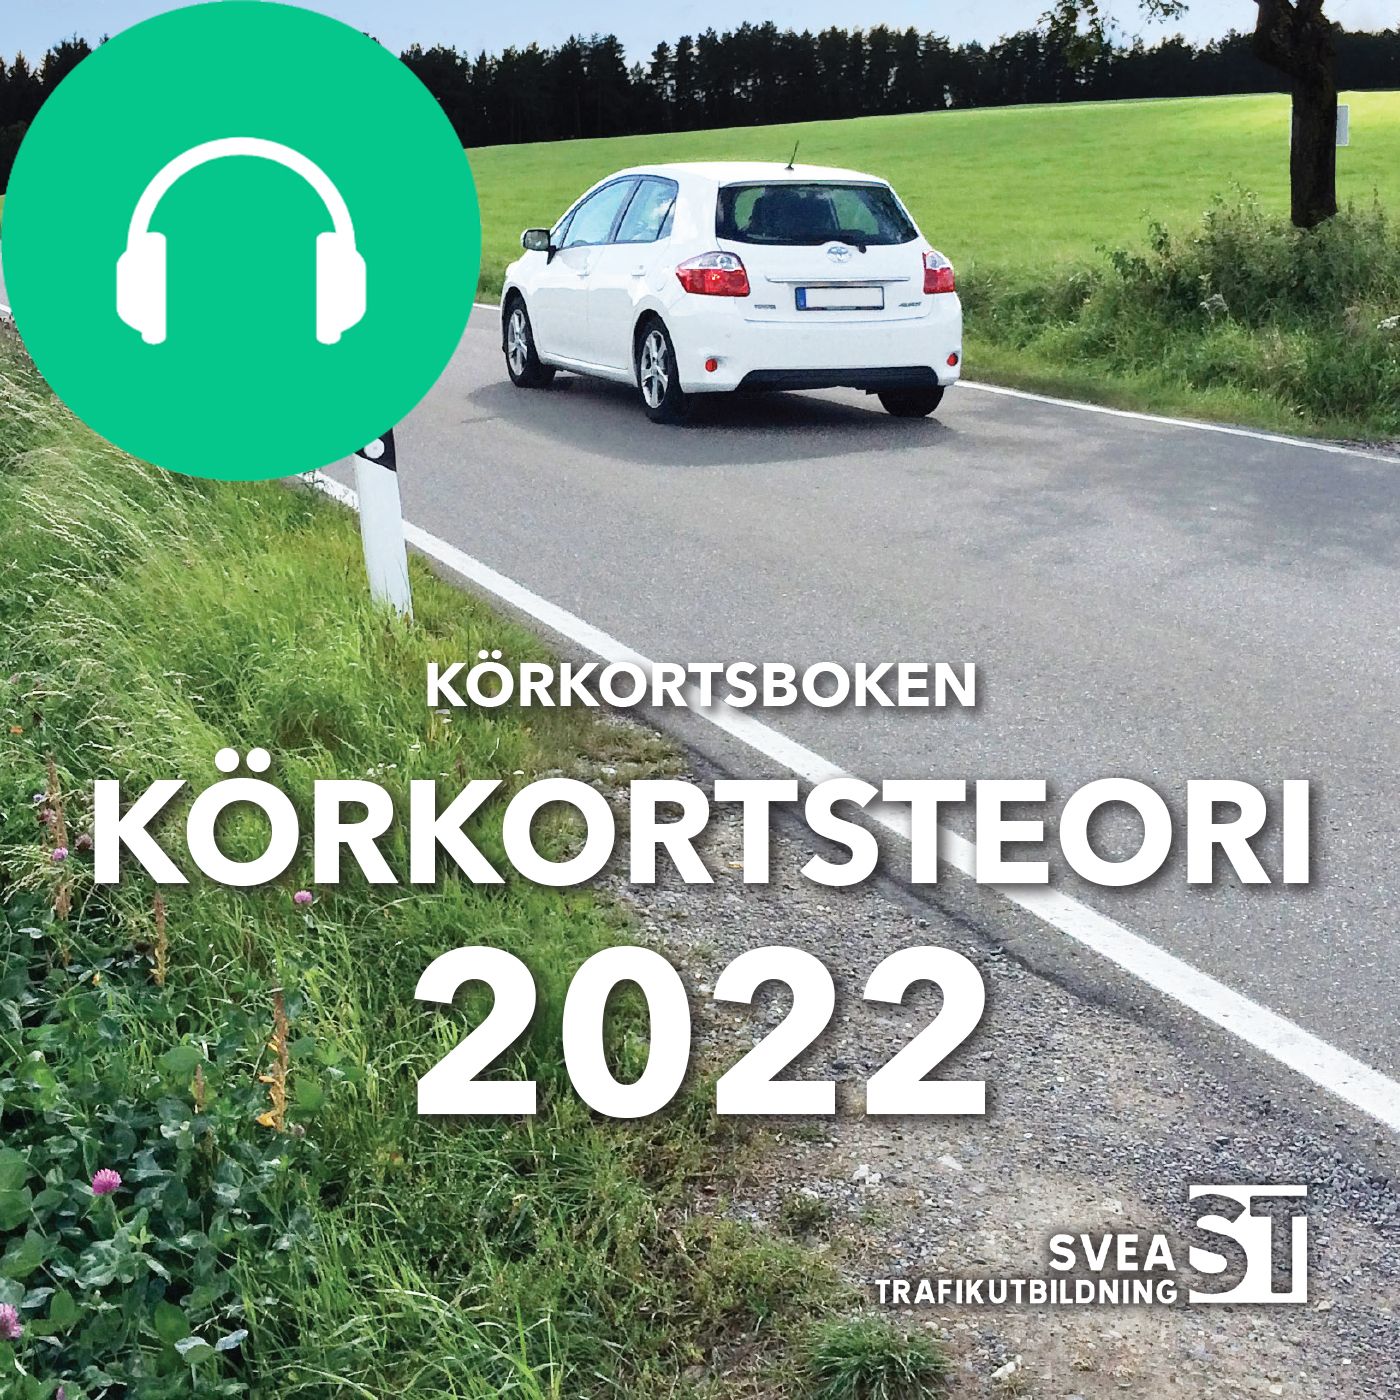 Körkortsboken Körkortsteori 2022, audiobook by Svea Trafikutbildning